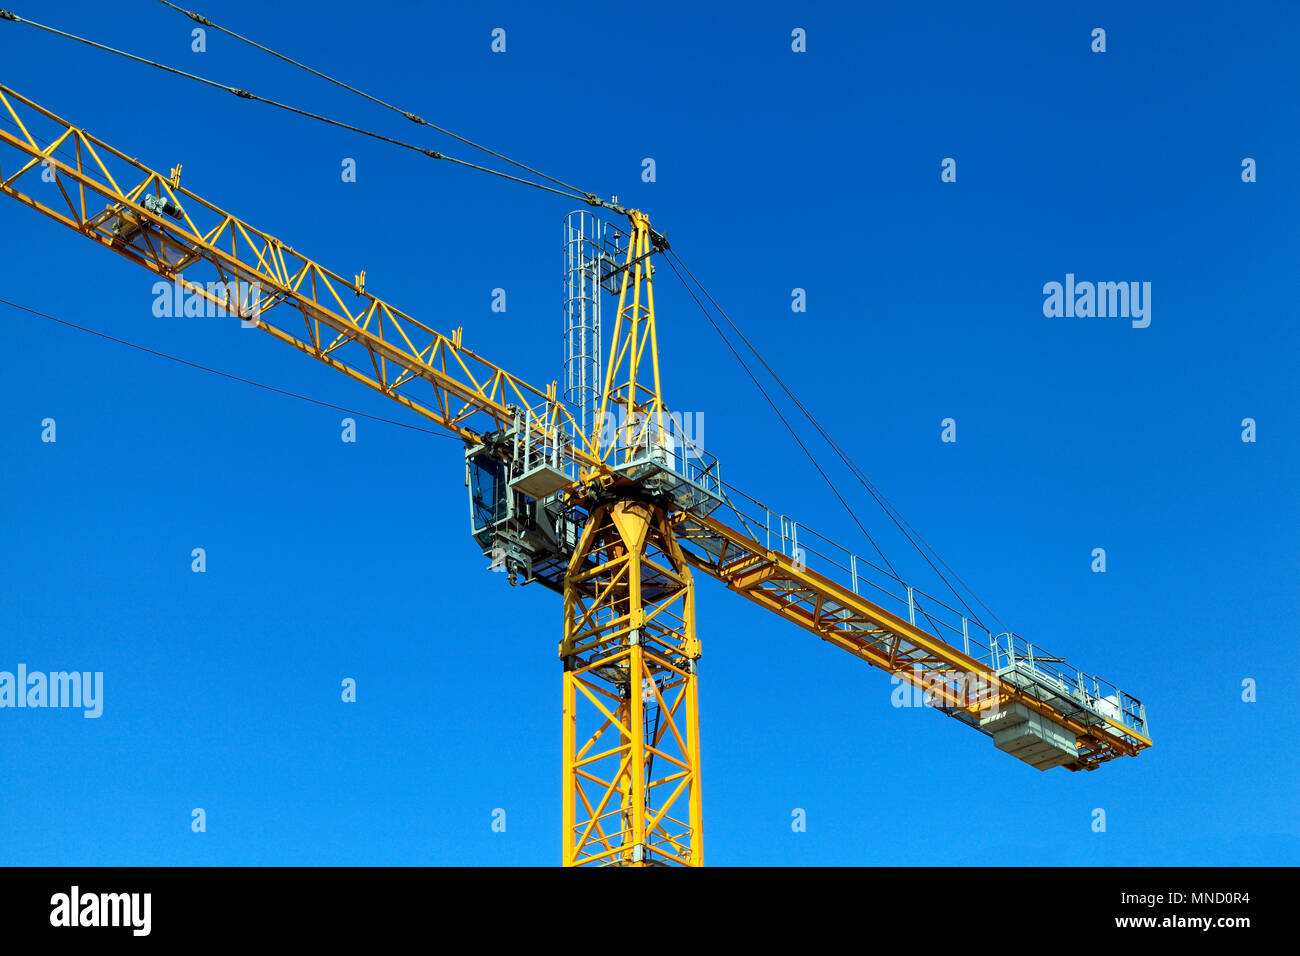 Falcon gru a torre, servizi di costruzione, gru di cantiere, Hunstanton, Norfolk, Regno Unito, Inghilterra, dettaglio, edilizia, industria Foto Stock